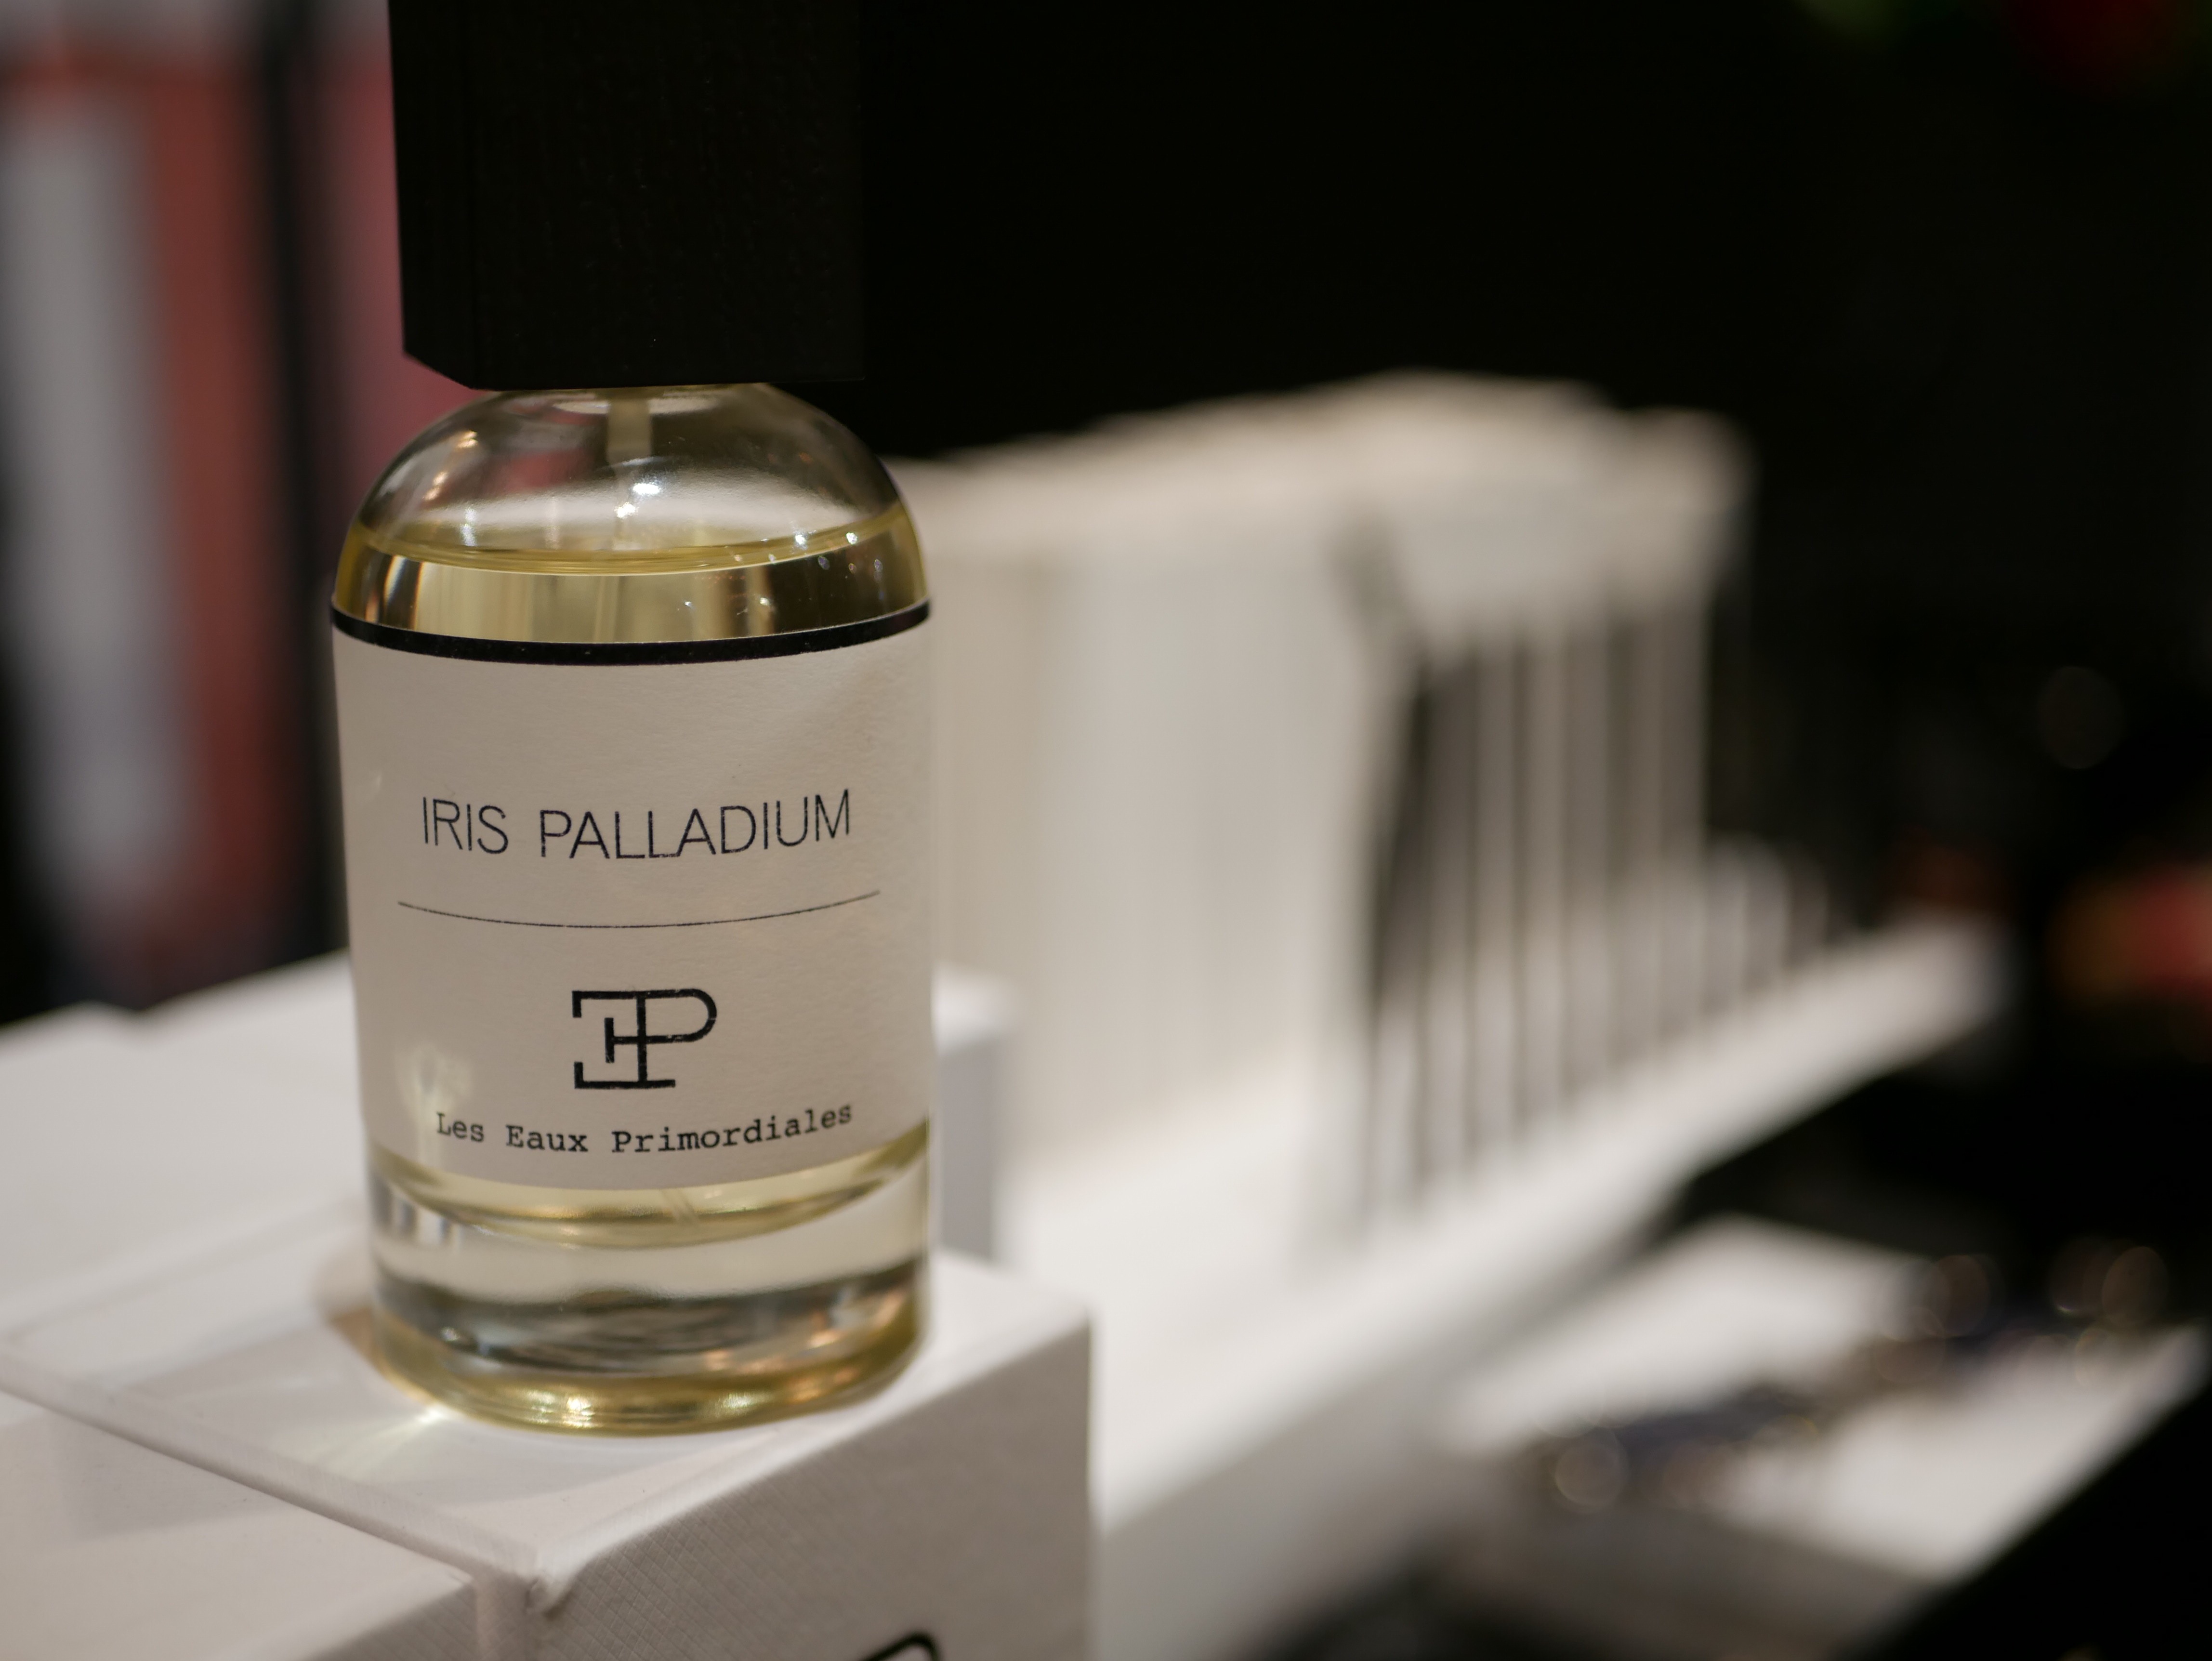 Irisär huvudingrediensen i Iris Palladium från franska Les Eaux Primordiales skapat av Arnaud Poulain.